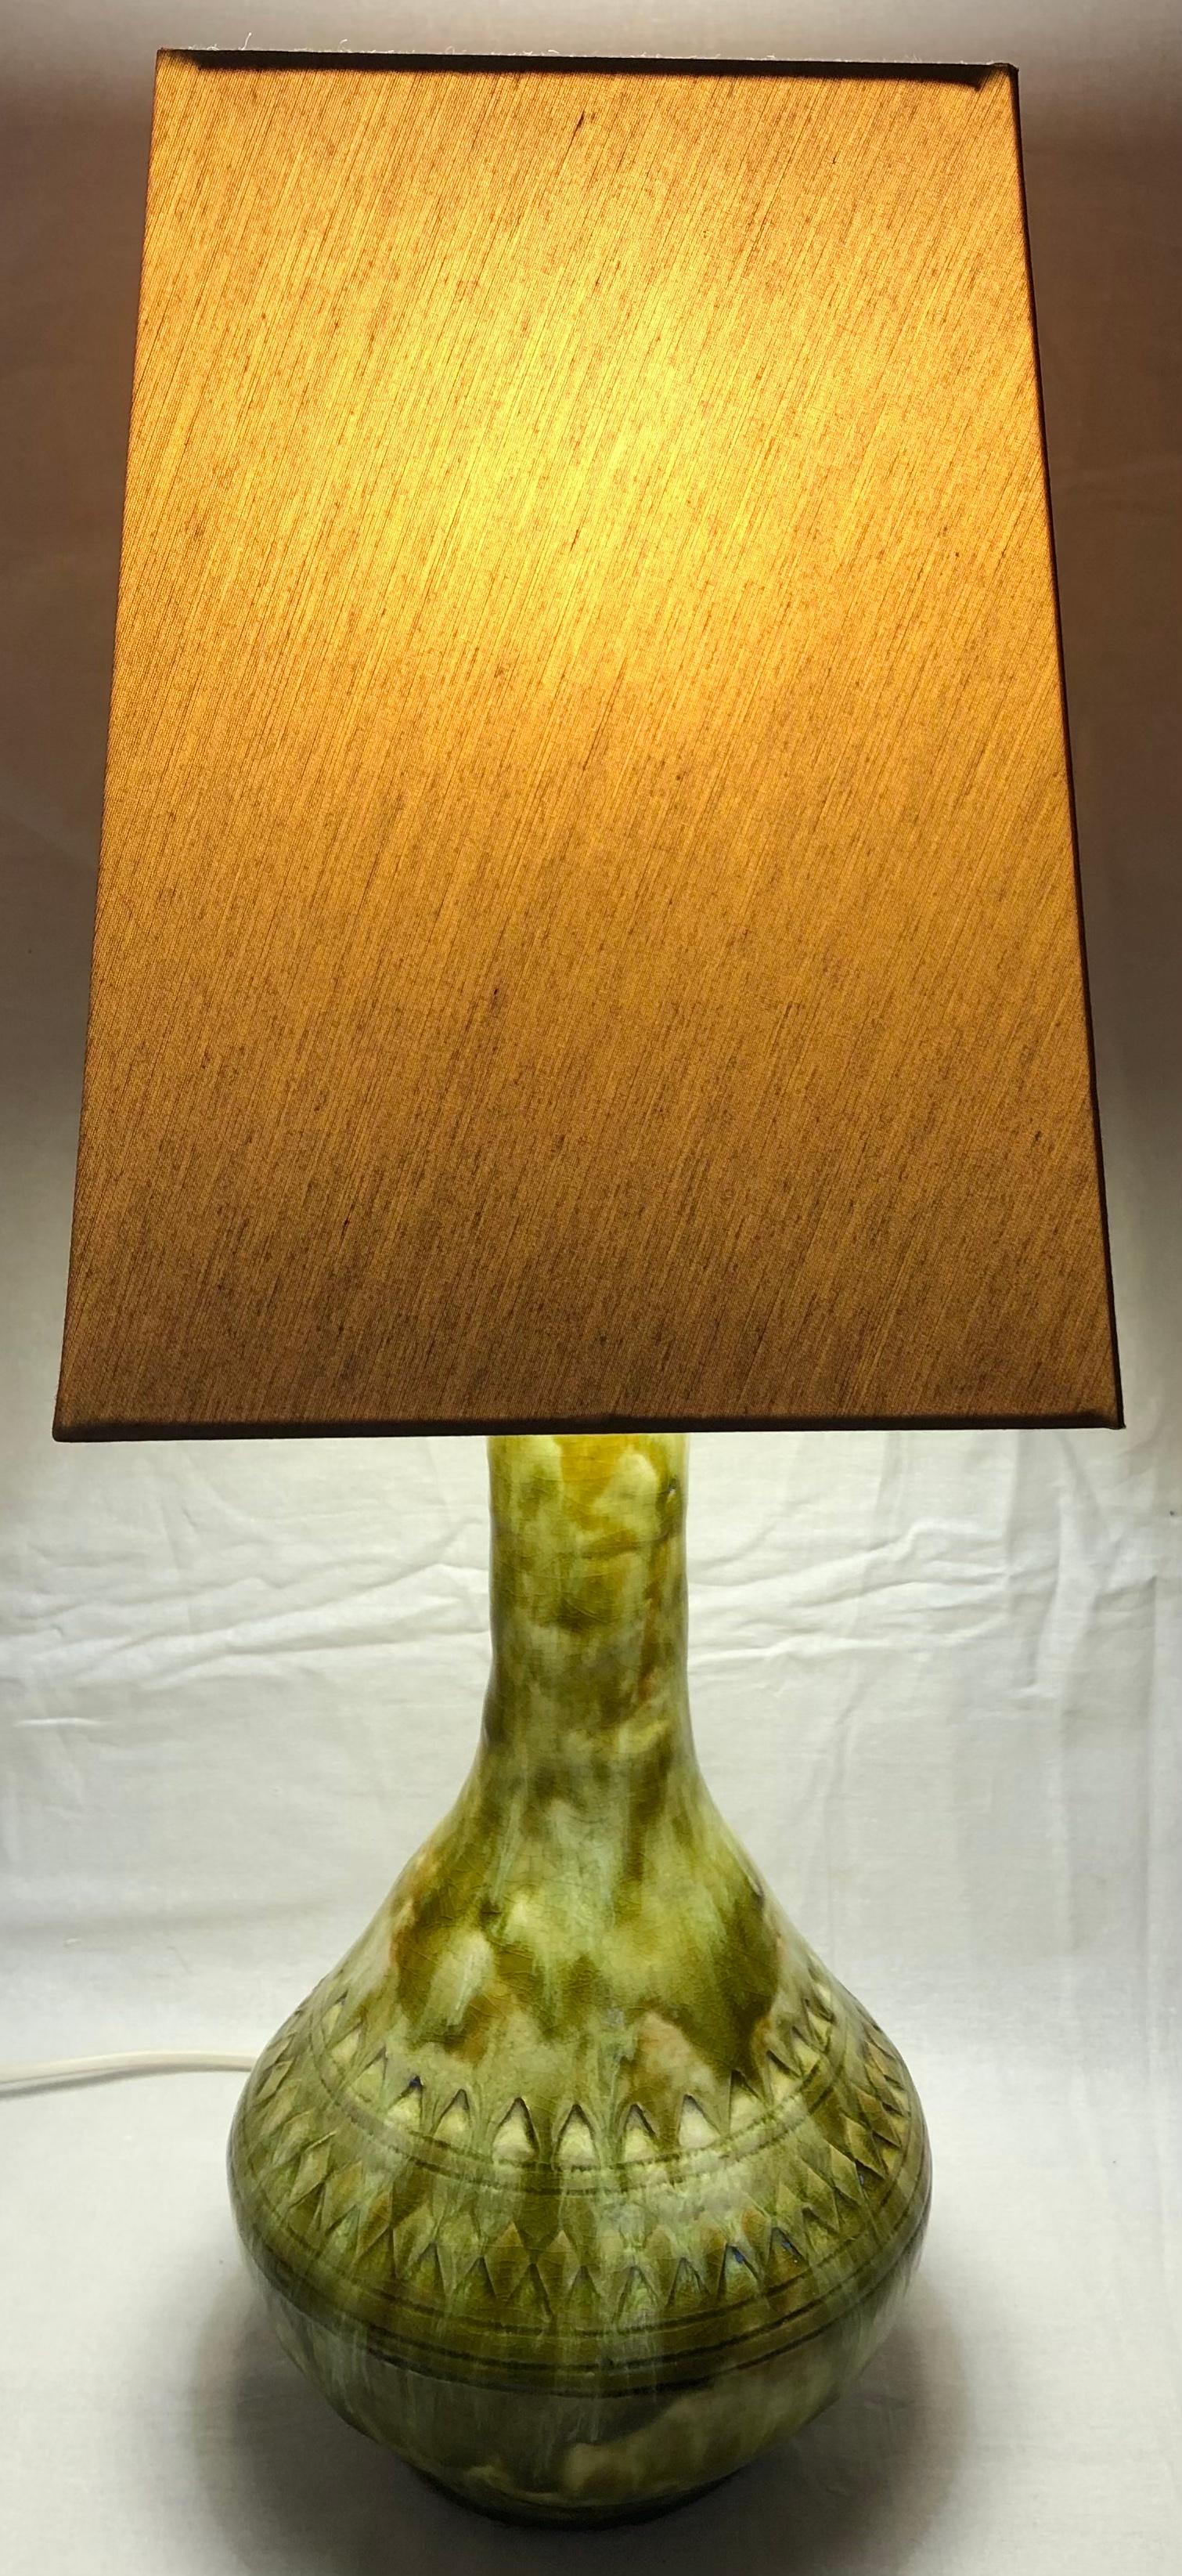 Lampe de table très décorative dans une étonnante gamme de tons beige et vert pâle. Cette lampe de table en céramique de style moderne du milieu du siècle présente un travail sculptural remarquable et sera du plus bel effet dans n'importe quel